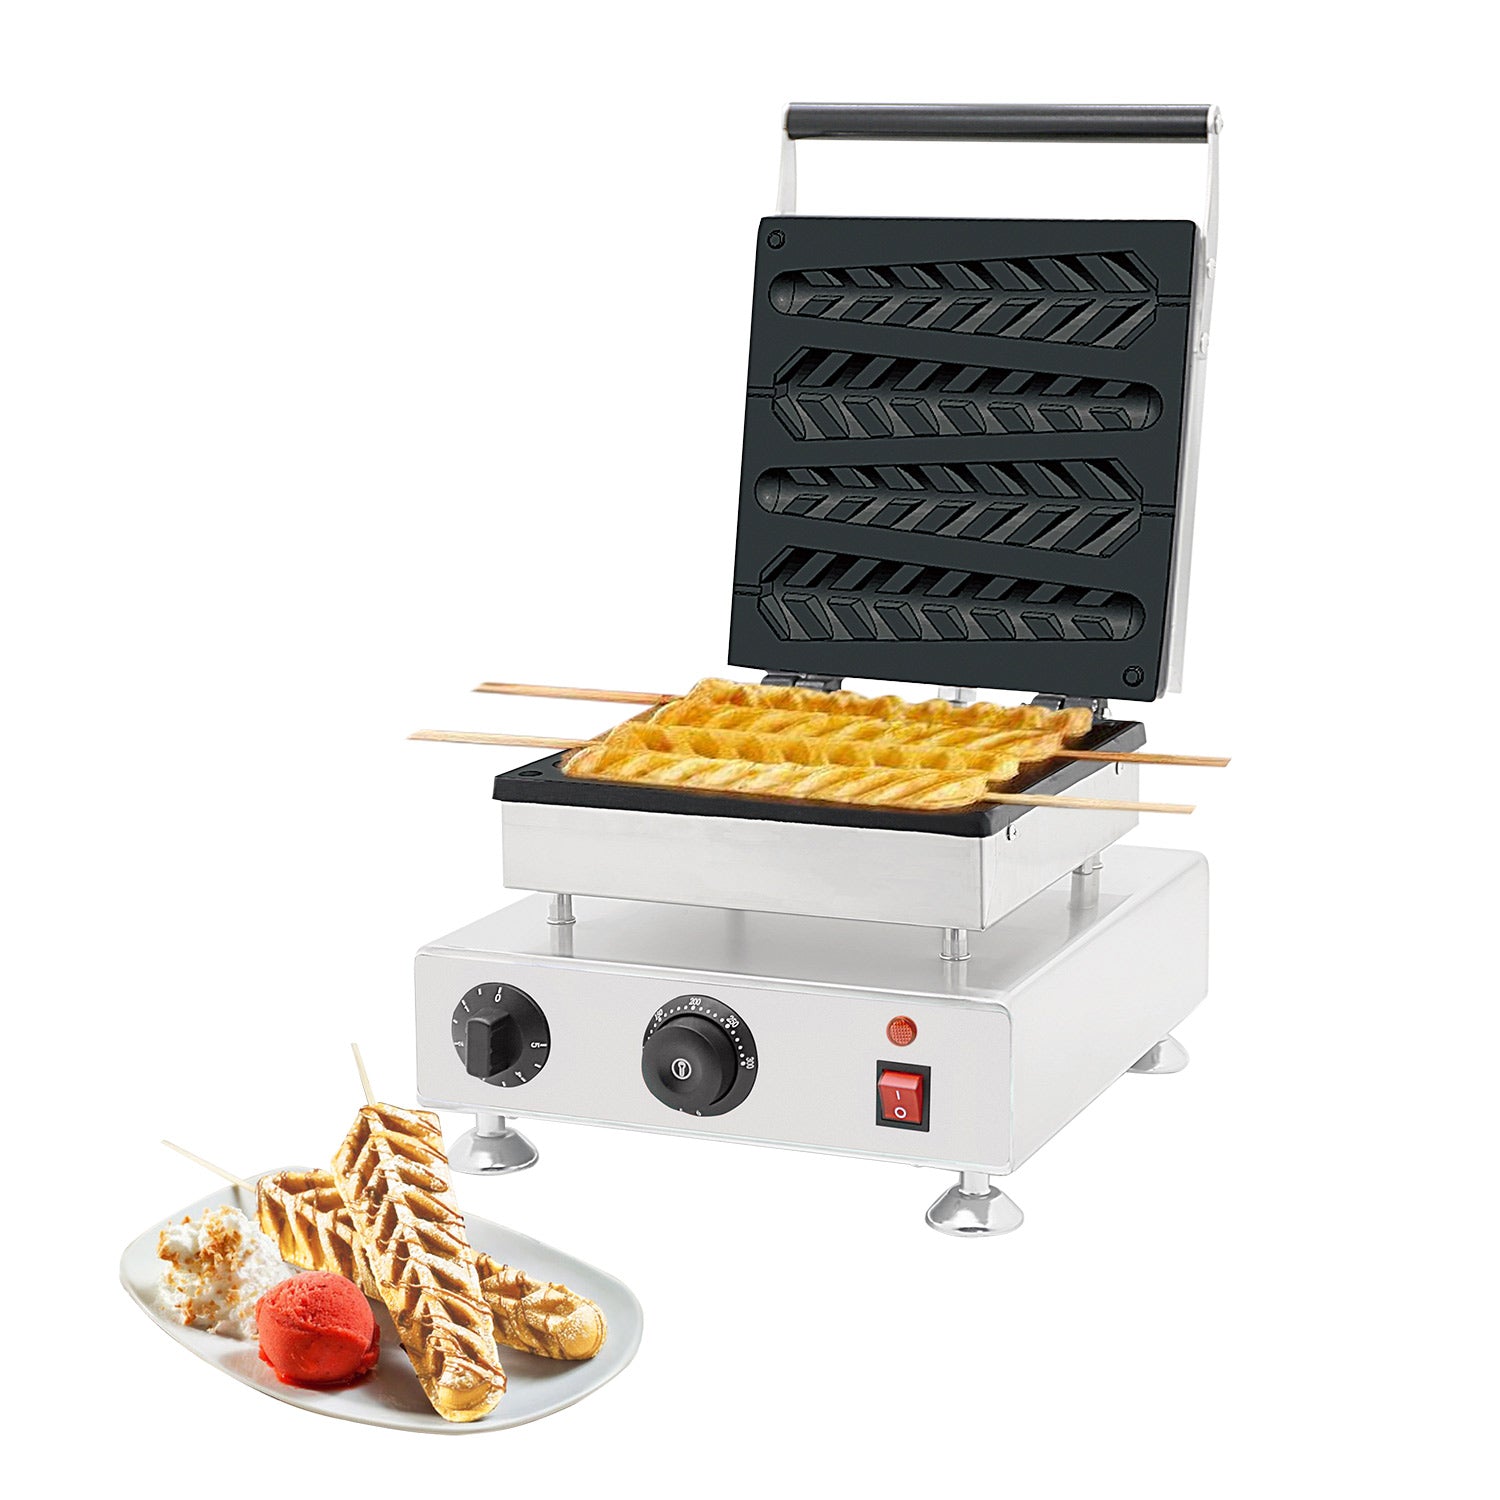 https://www.professionalkitchen.equipment/cdn/shop/products/stick-waffle-maker-1-1_105ba17a-bc5b-45a8-918d-808a3c1f4fb0_2048x2048.jpg?v=1675072659